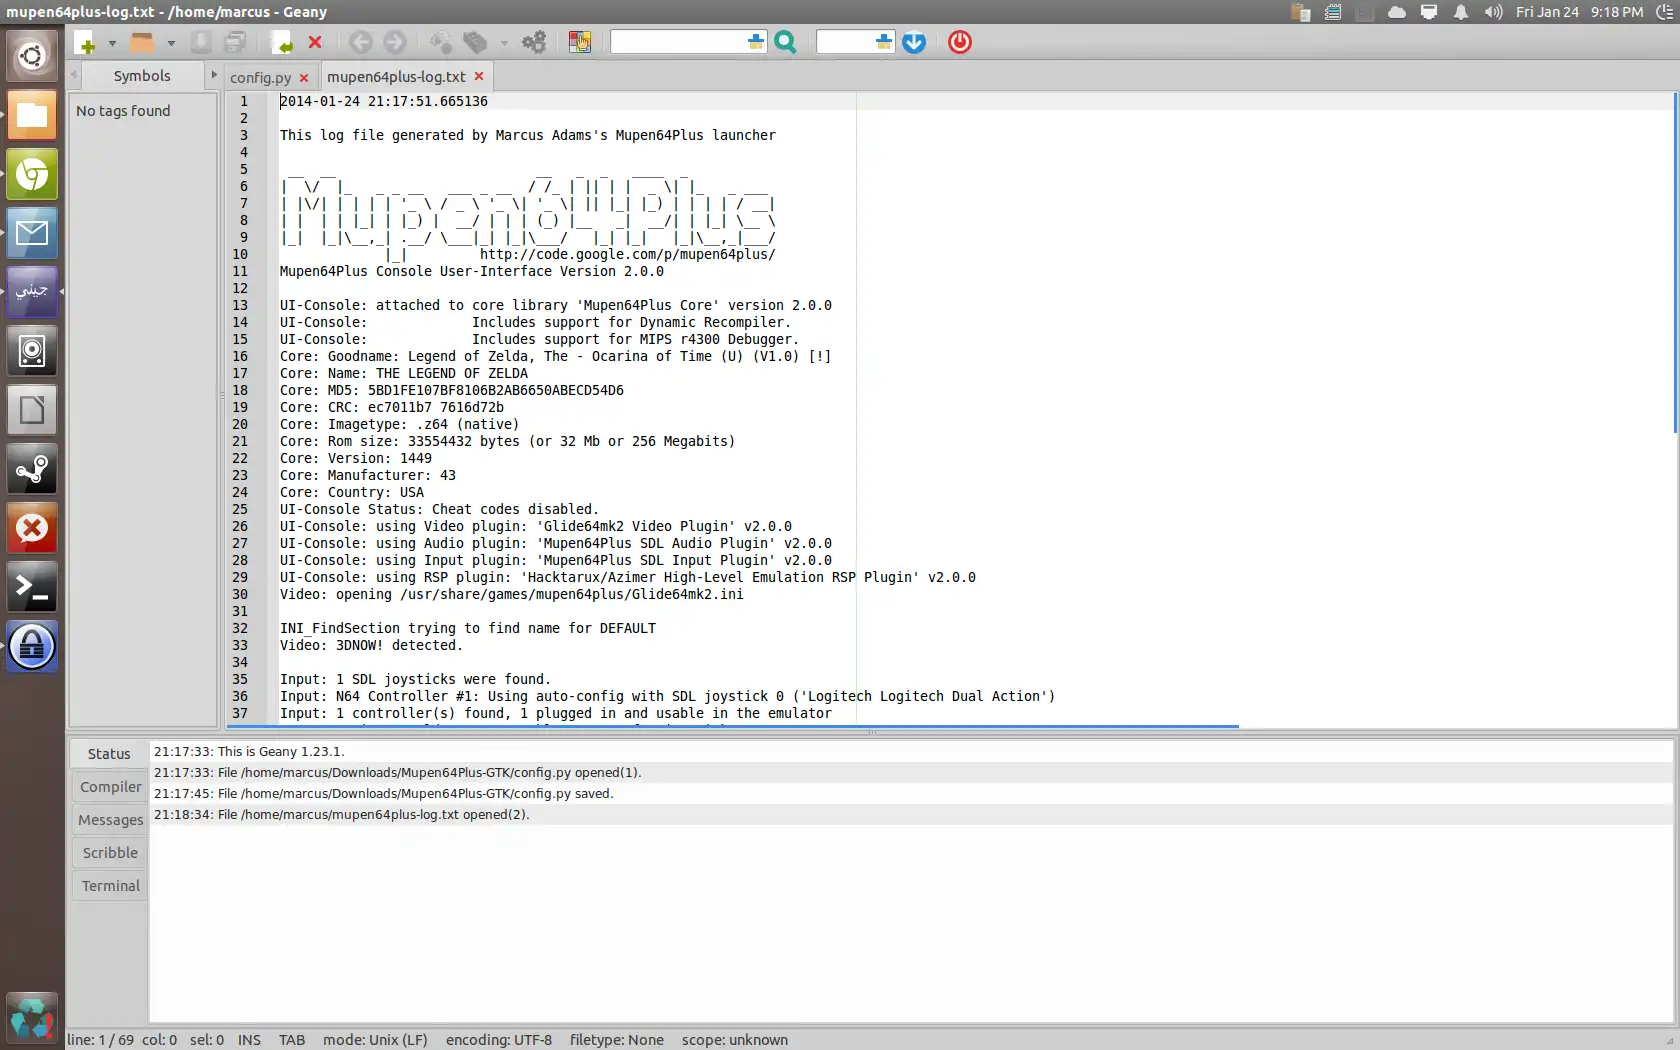 Laden Sie das Web-Tool oder die Web-App Mupen64Plus-PyTK herunter, um es online unter Linux auszuführen